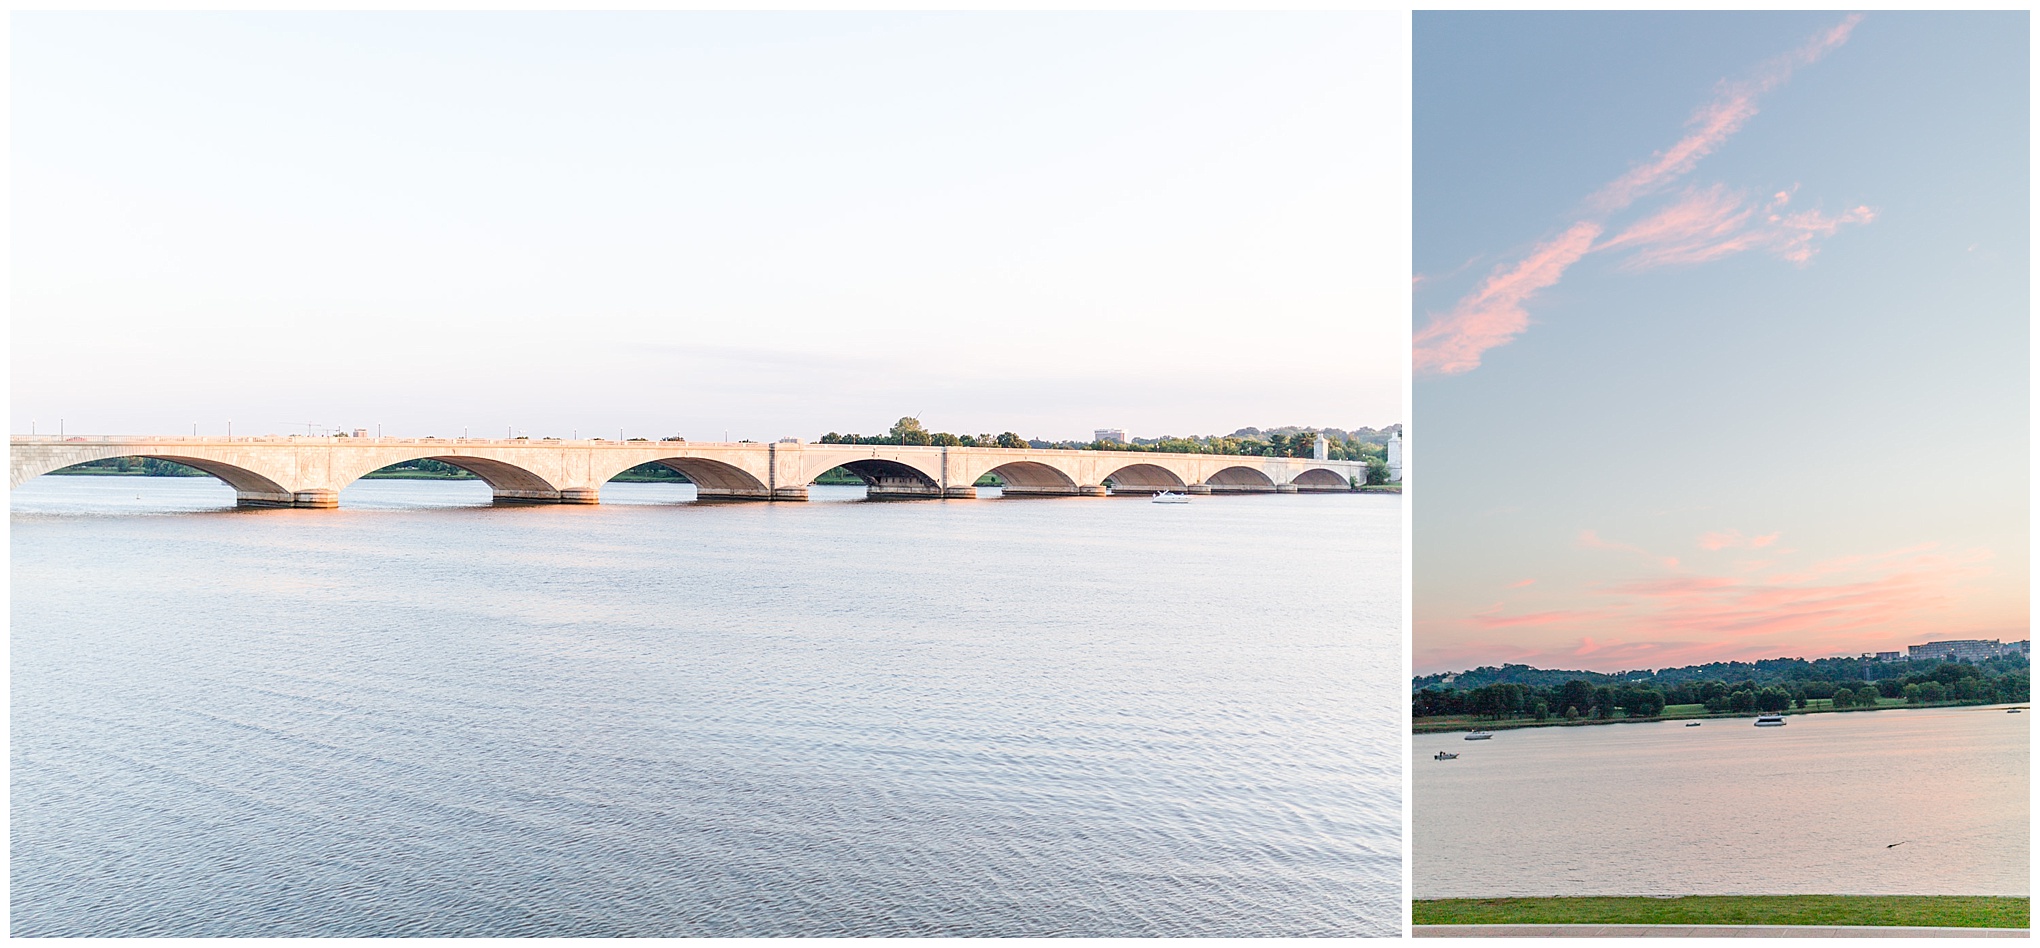 D.C. photo shoot spots, Lincoln Memorial, sunset, golden hour, magic hour, Washington, D.C. monuments, memorial bridge